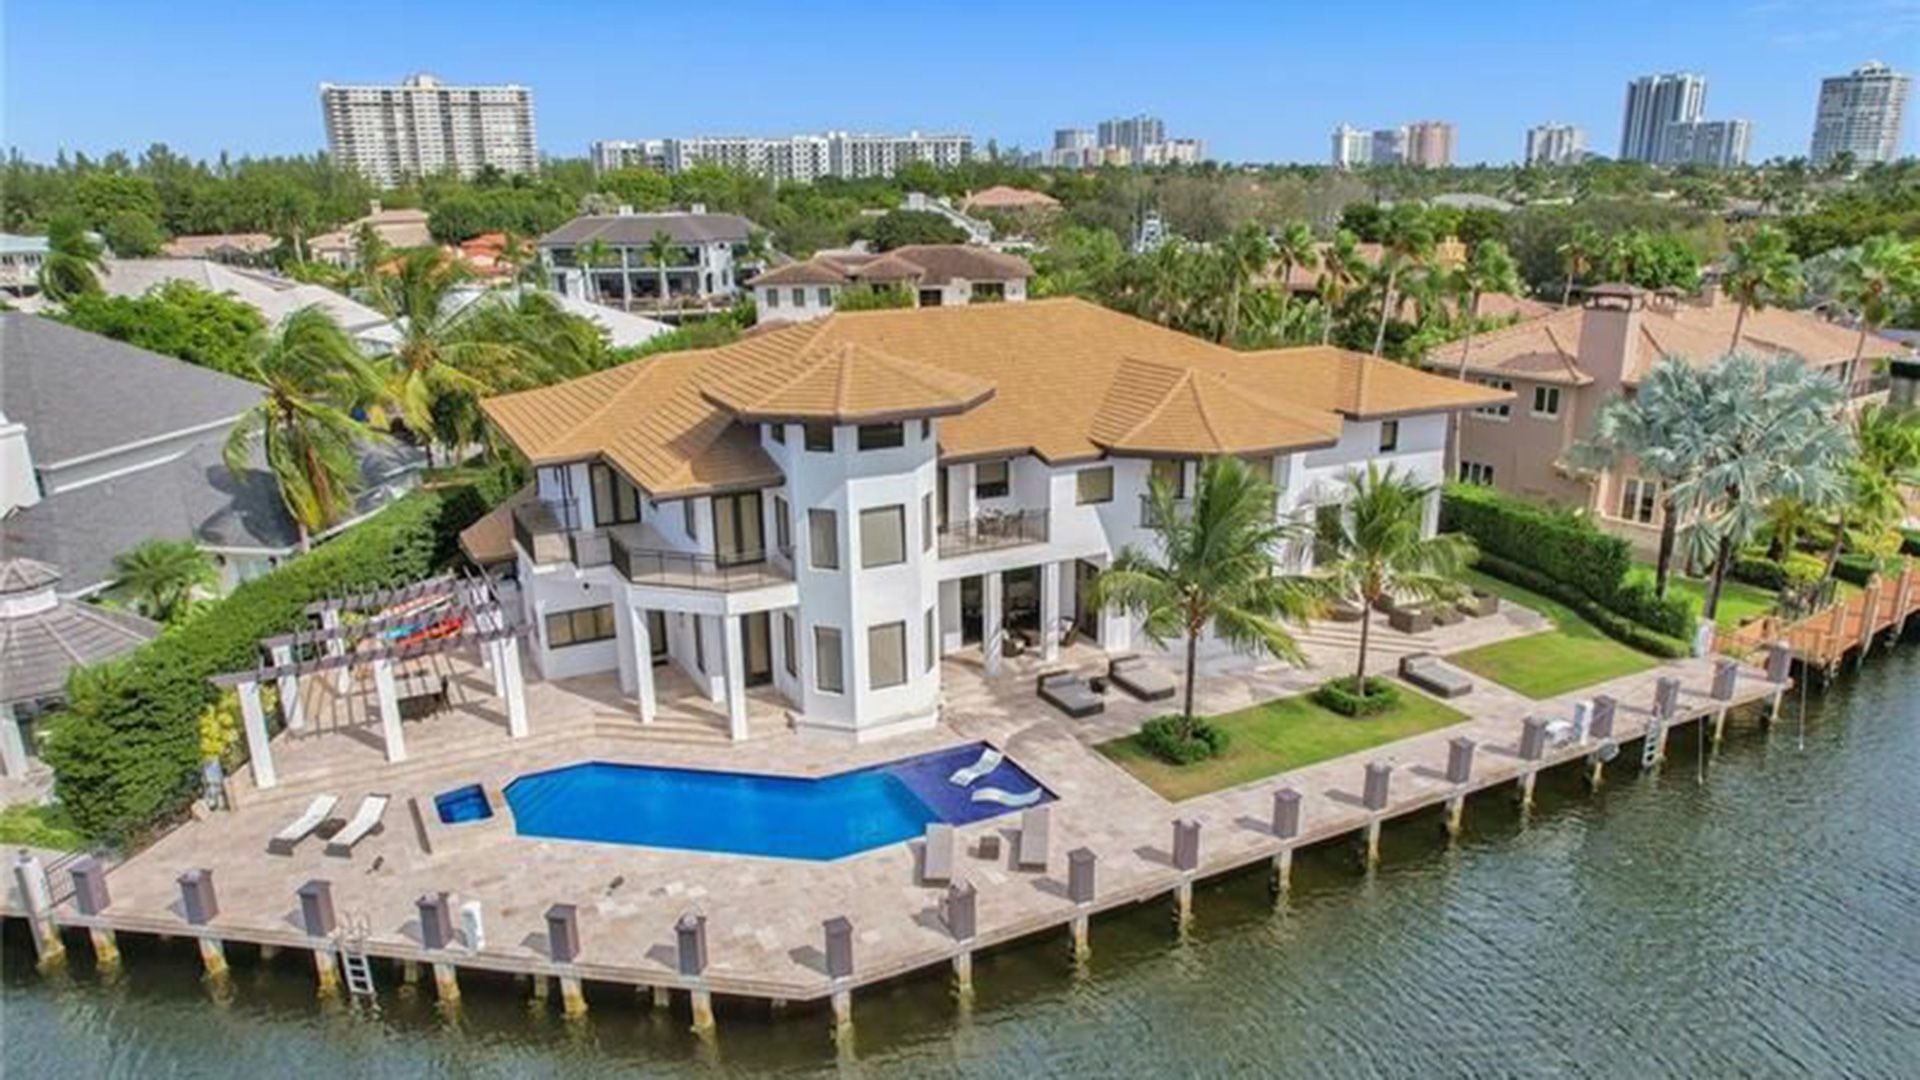 La propiedad tiene 10 habitaciones y piscina con vista al mar (MLS Compass Florida LLC)